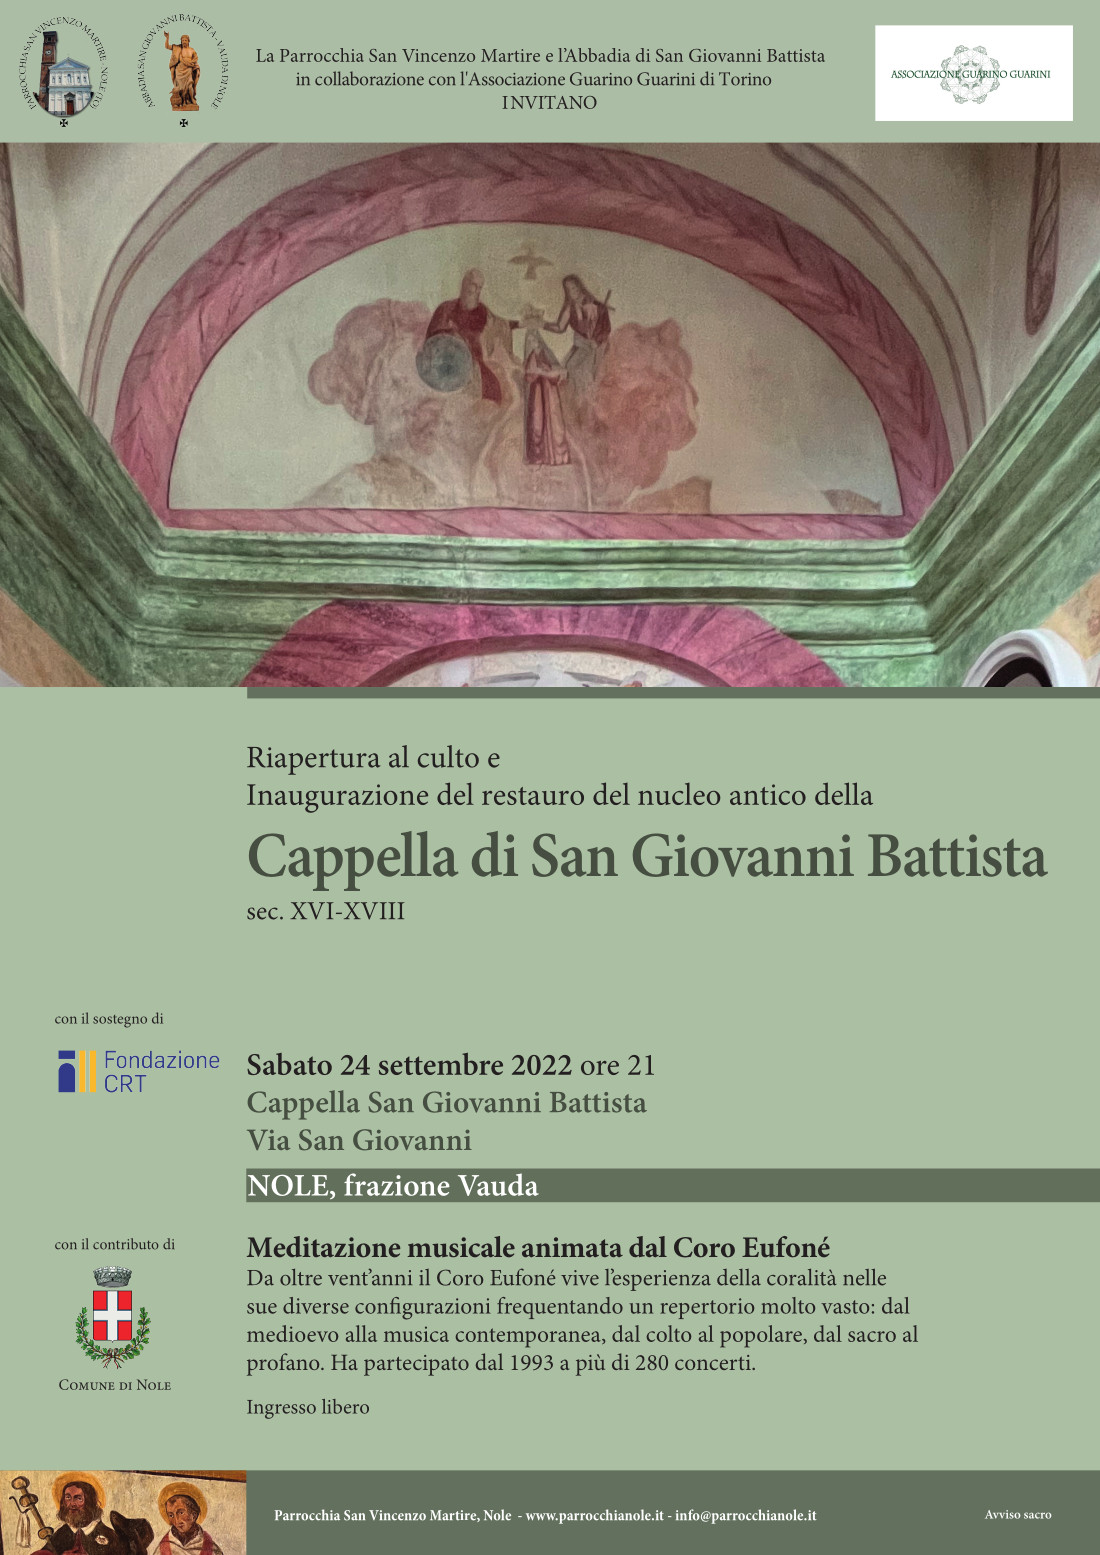 Riapertura e inaugurazione cappella di San Giovanni Battista